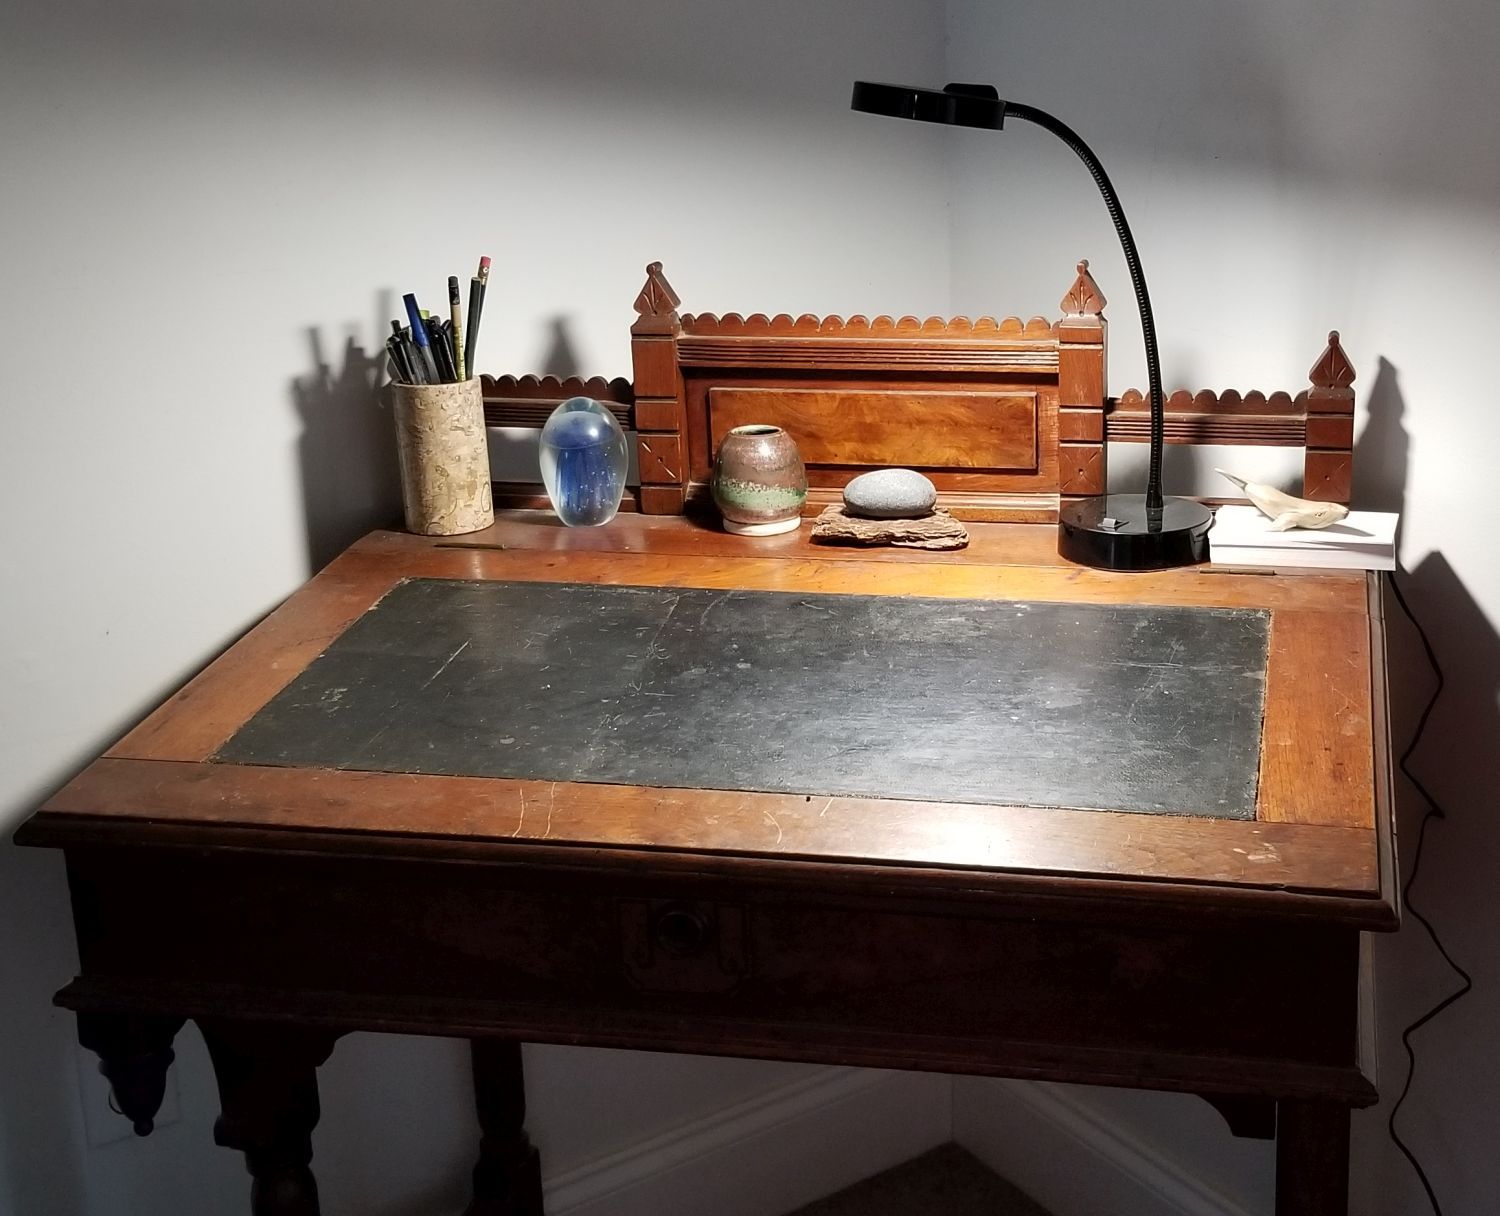 20180416_142507 - Momma's Eastlake Writing Desk.jpg